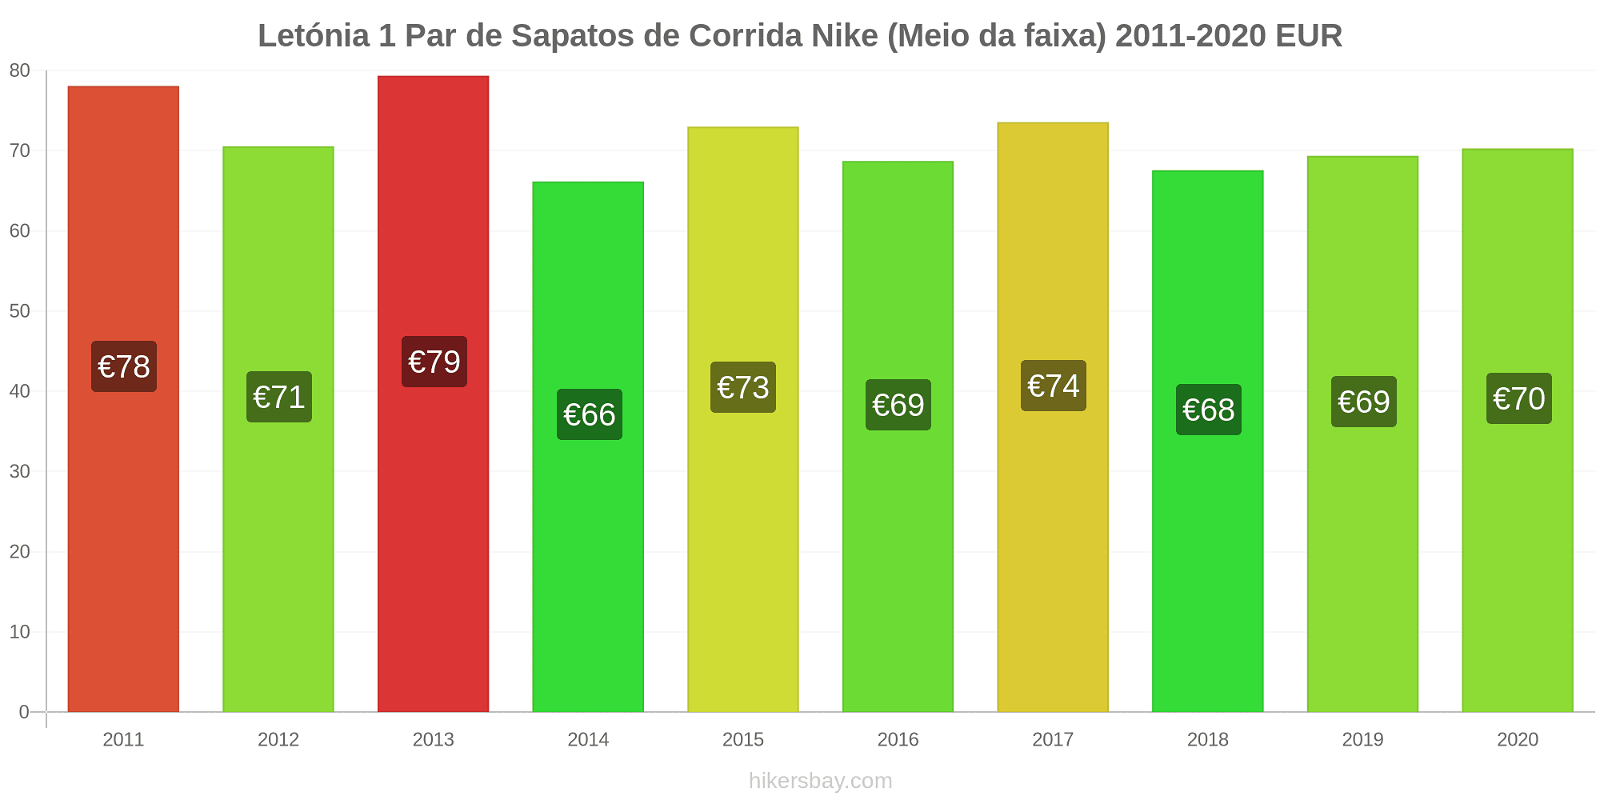 Letónia variação de preço 1 par de tênis Nike (mid-range) hikersbay.com